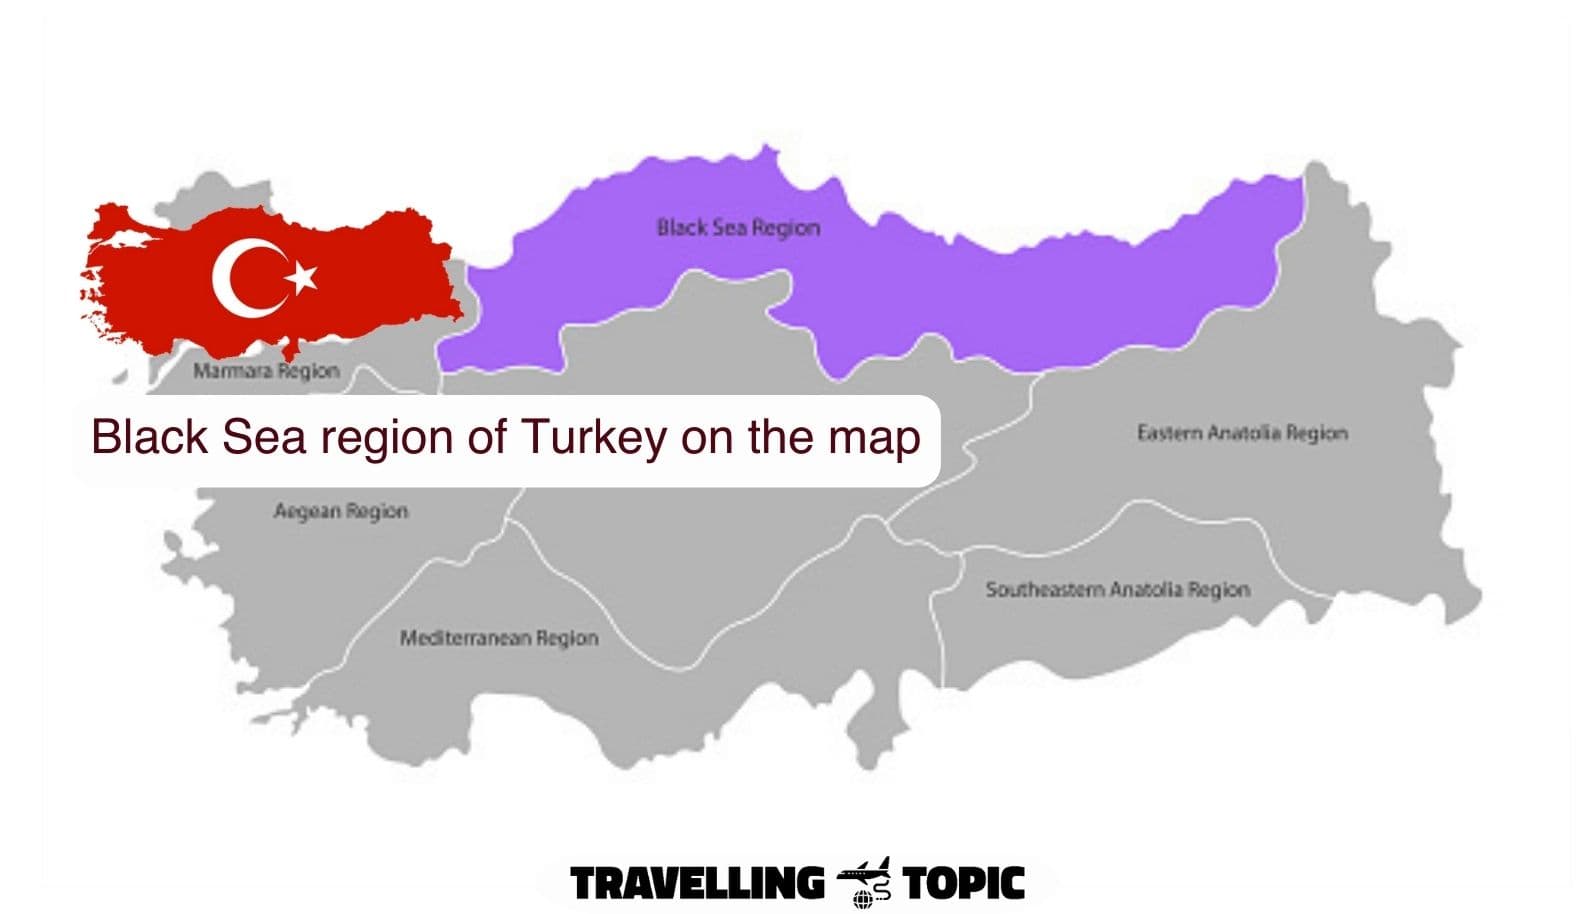 Black Sea region of Turkey on the map